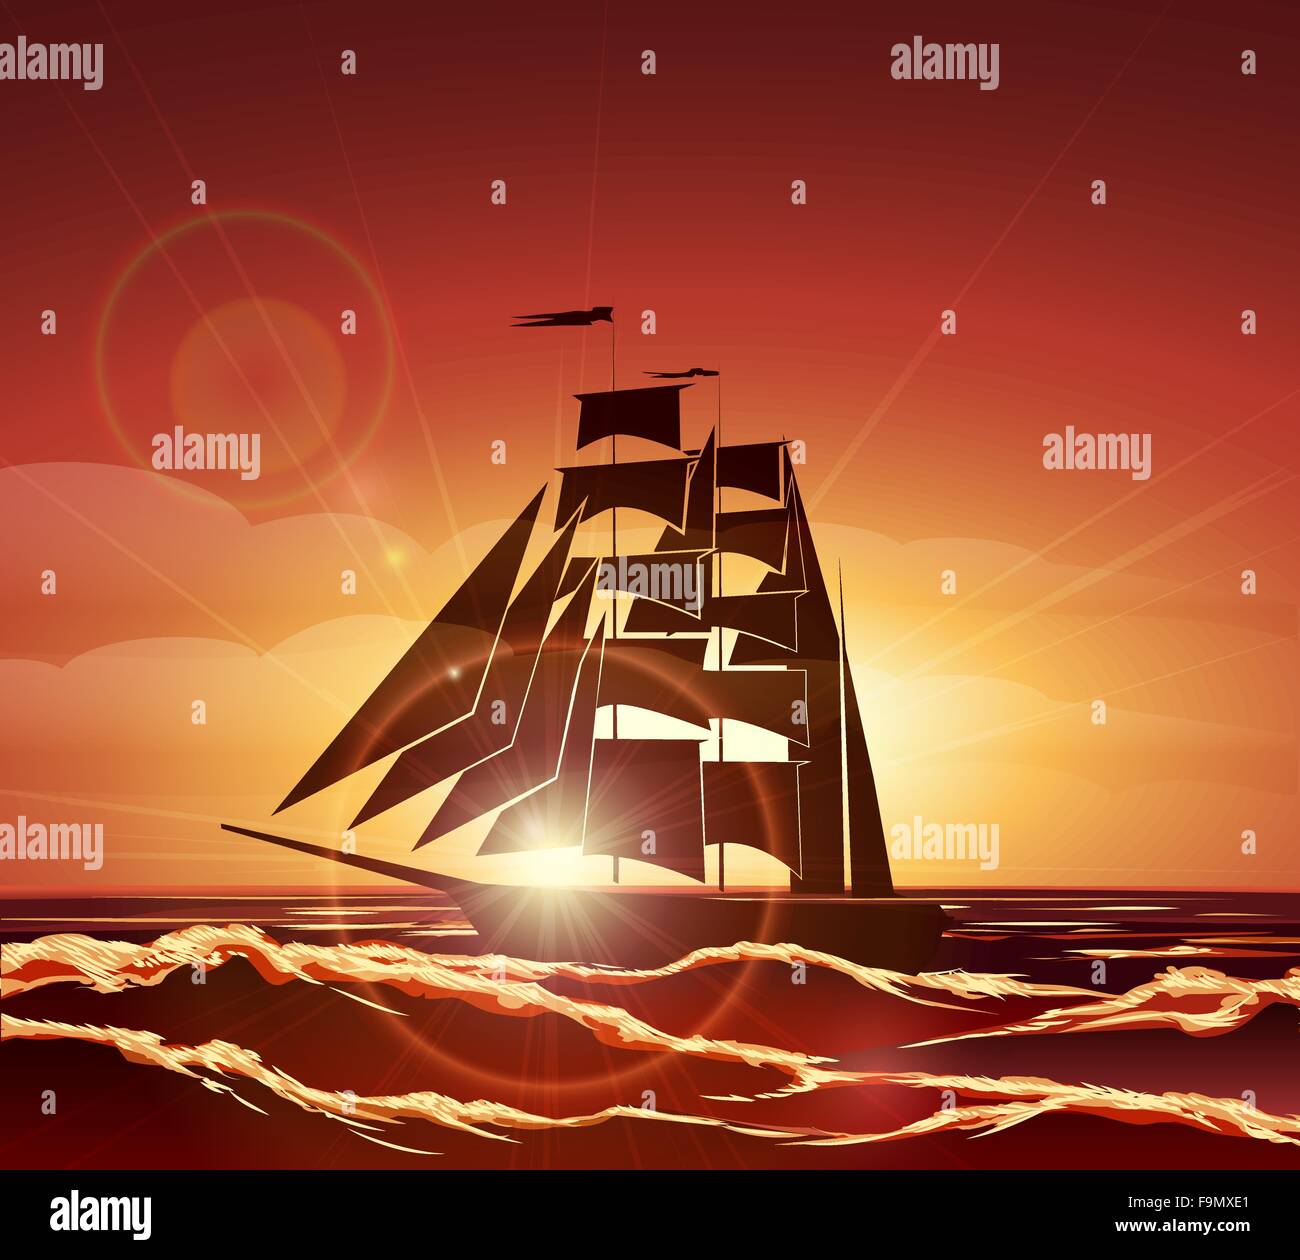 Segelboot bei Sonnenuntergang. Bunte Illustration. Stock Vektor